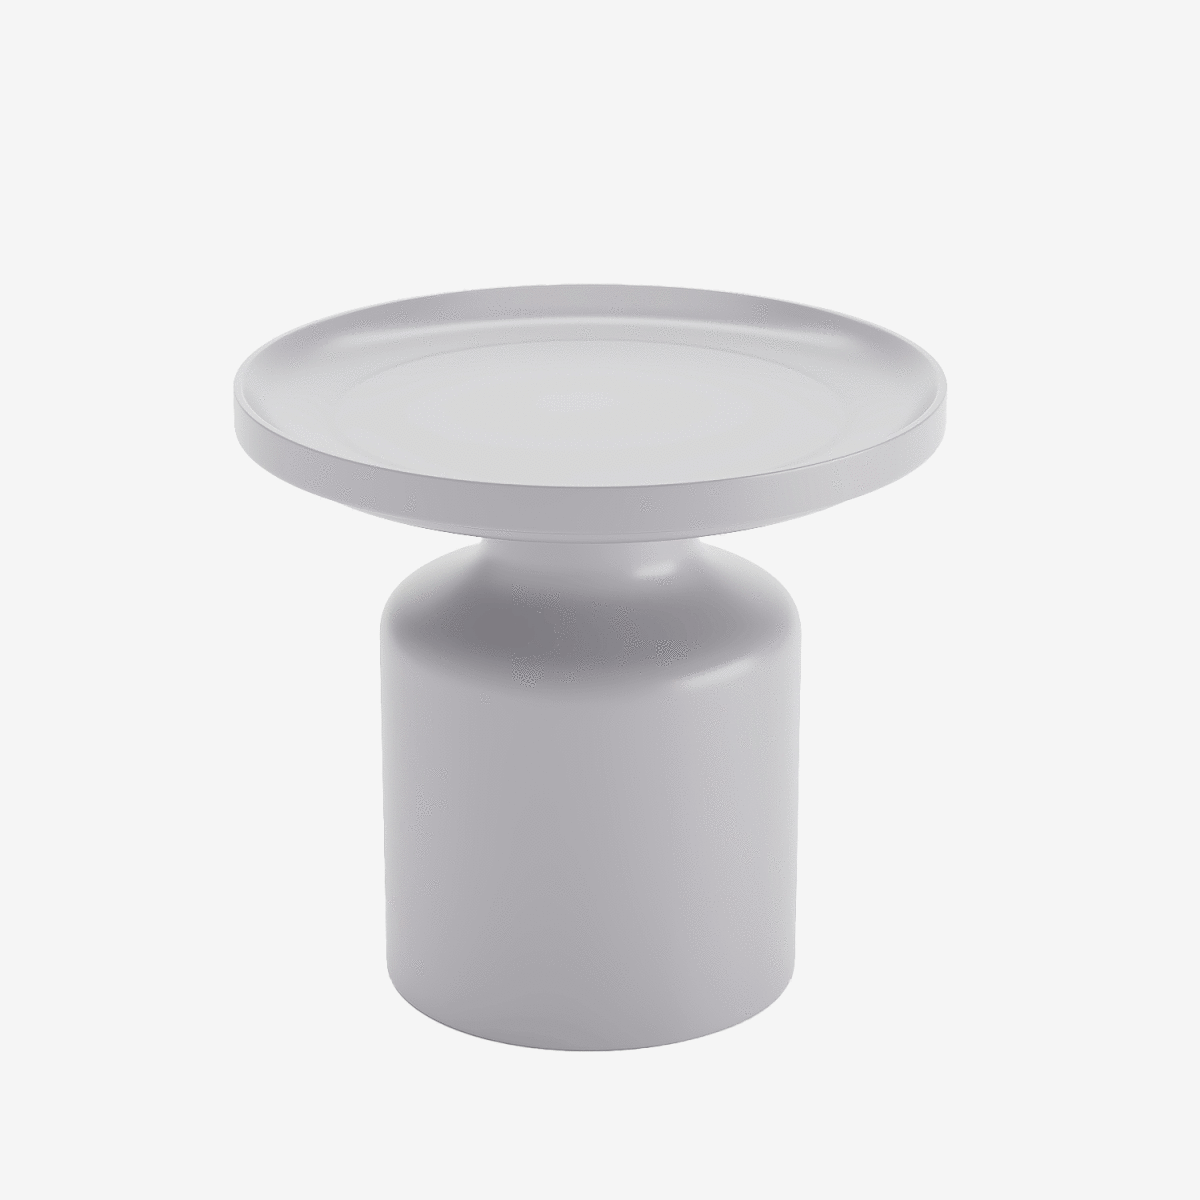 La polyvalence de la petite table ronde en métal gris clair Sa polyvalence ne se limite pas à son design. Amande peut se combiner avec une table basse pour créer des volumes riches dans le salon